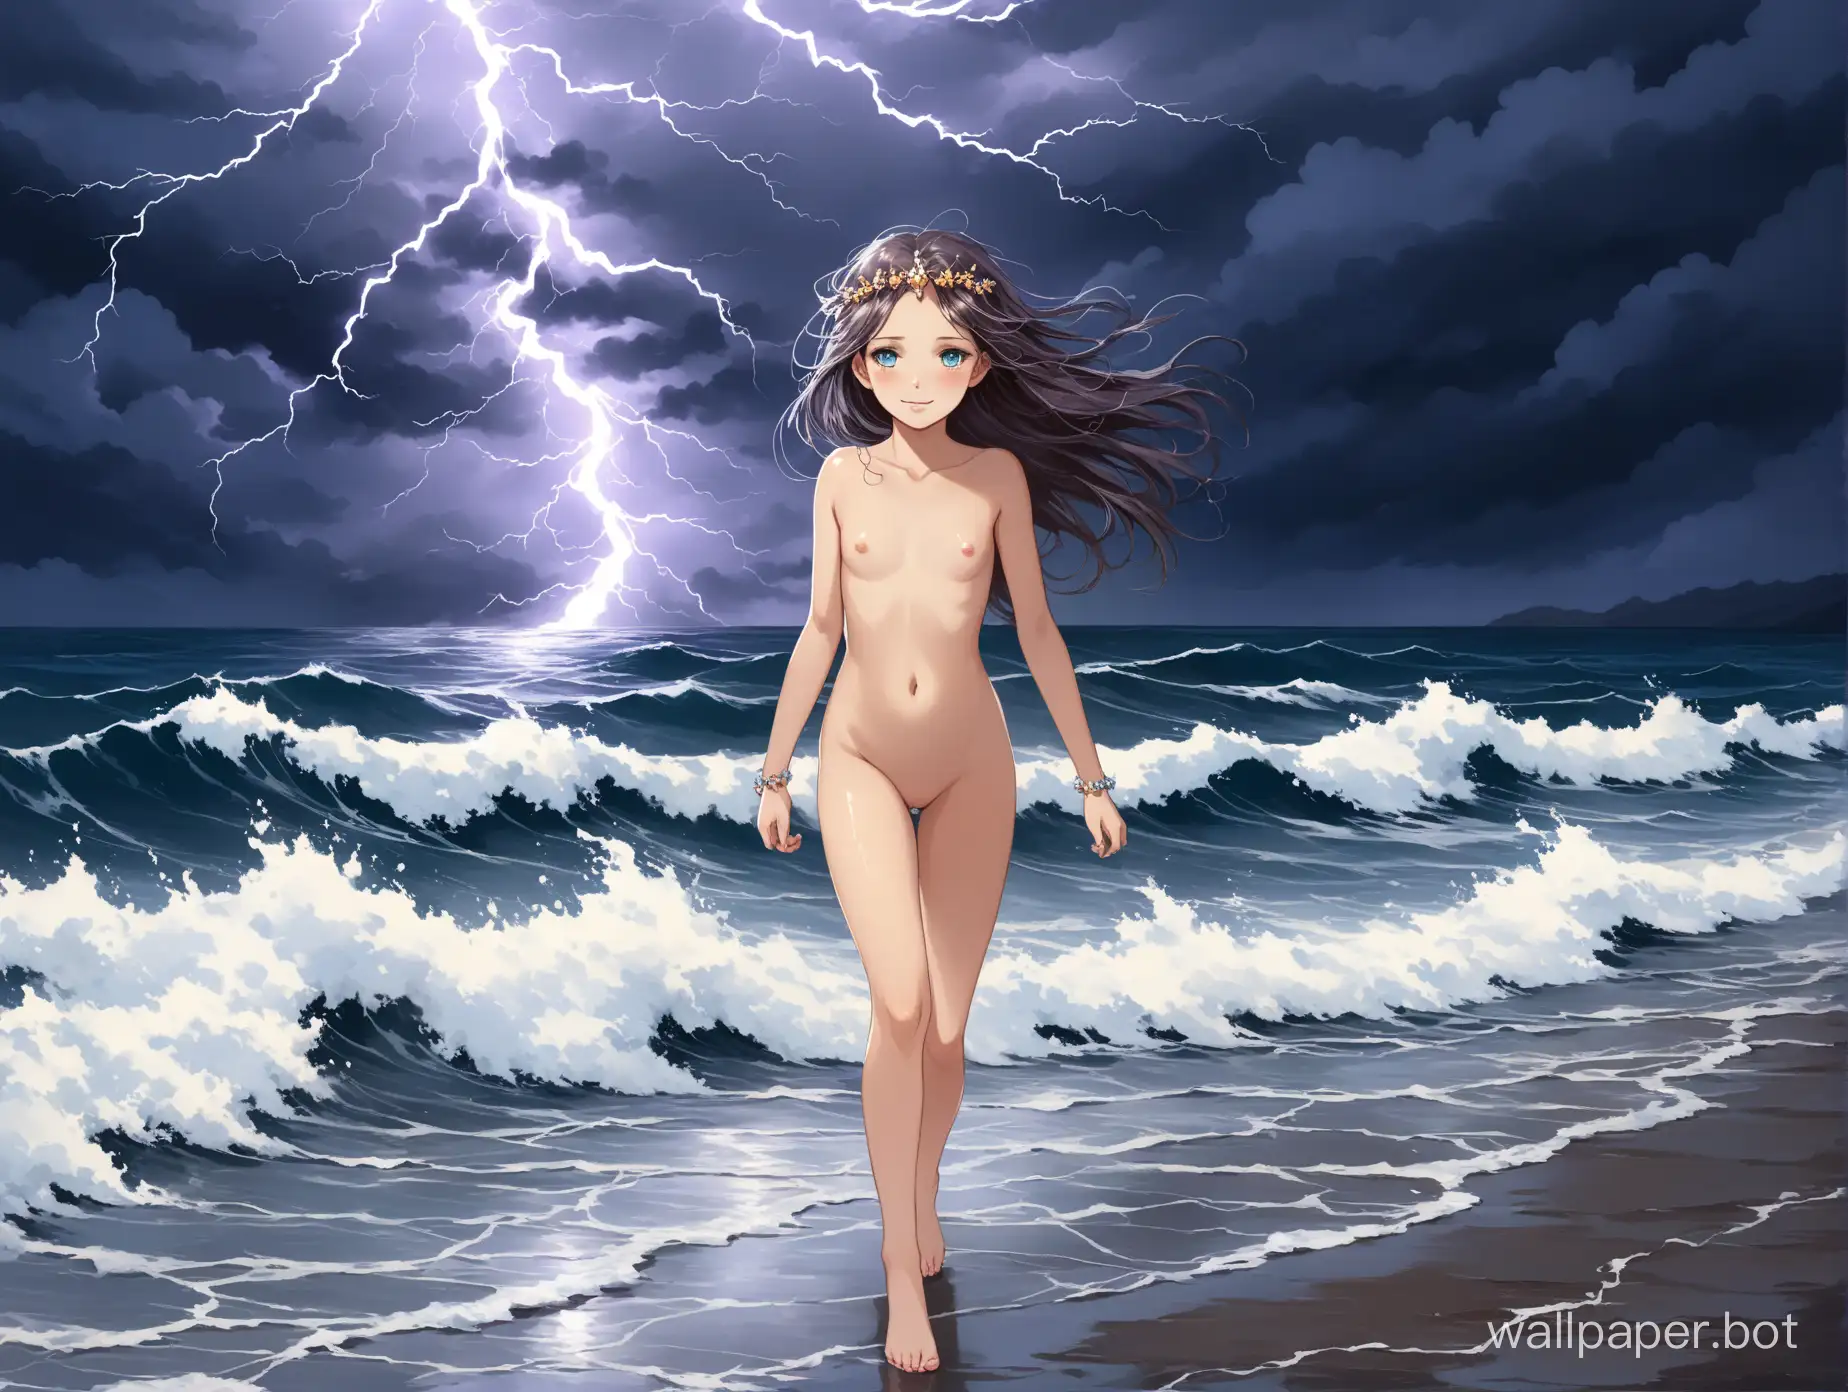 богиня бури весёлая девочка 12 лет обнажённая шалунья драгоценности идёт по дороге над волнами штормового моря под грозовым небом с молниями